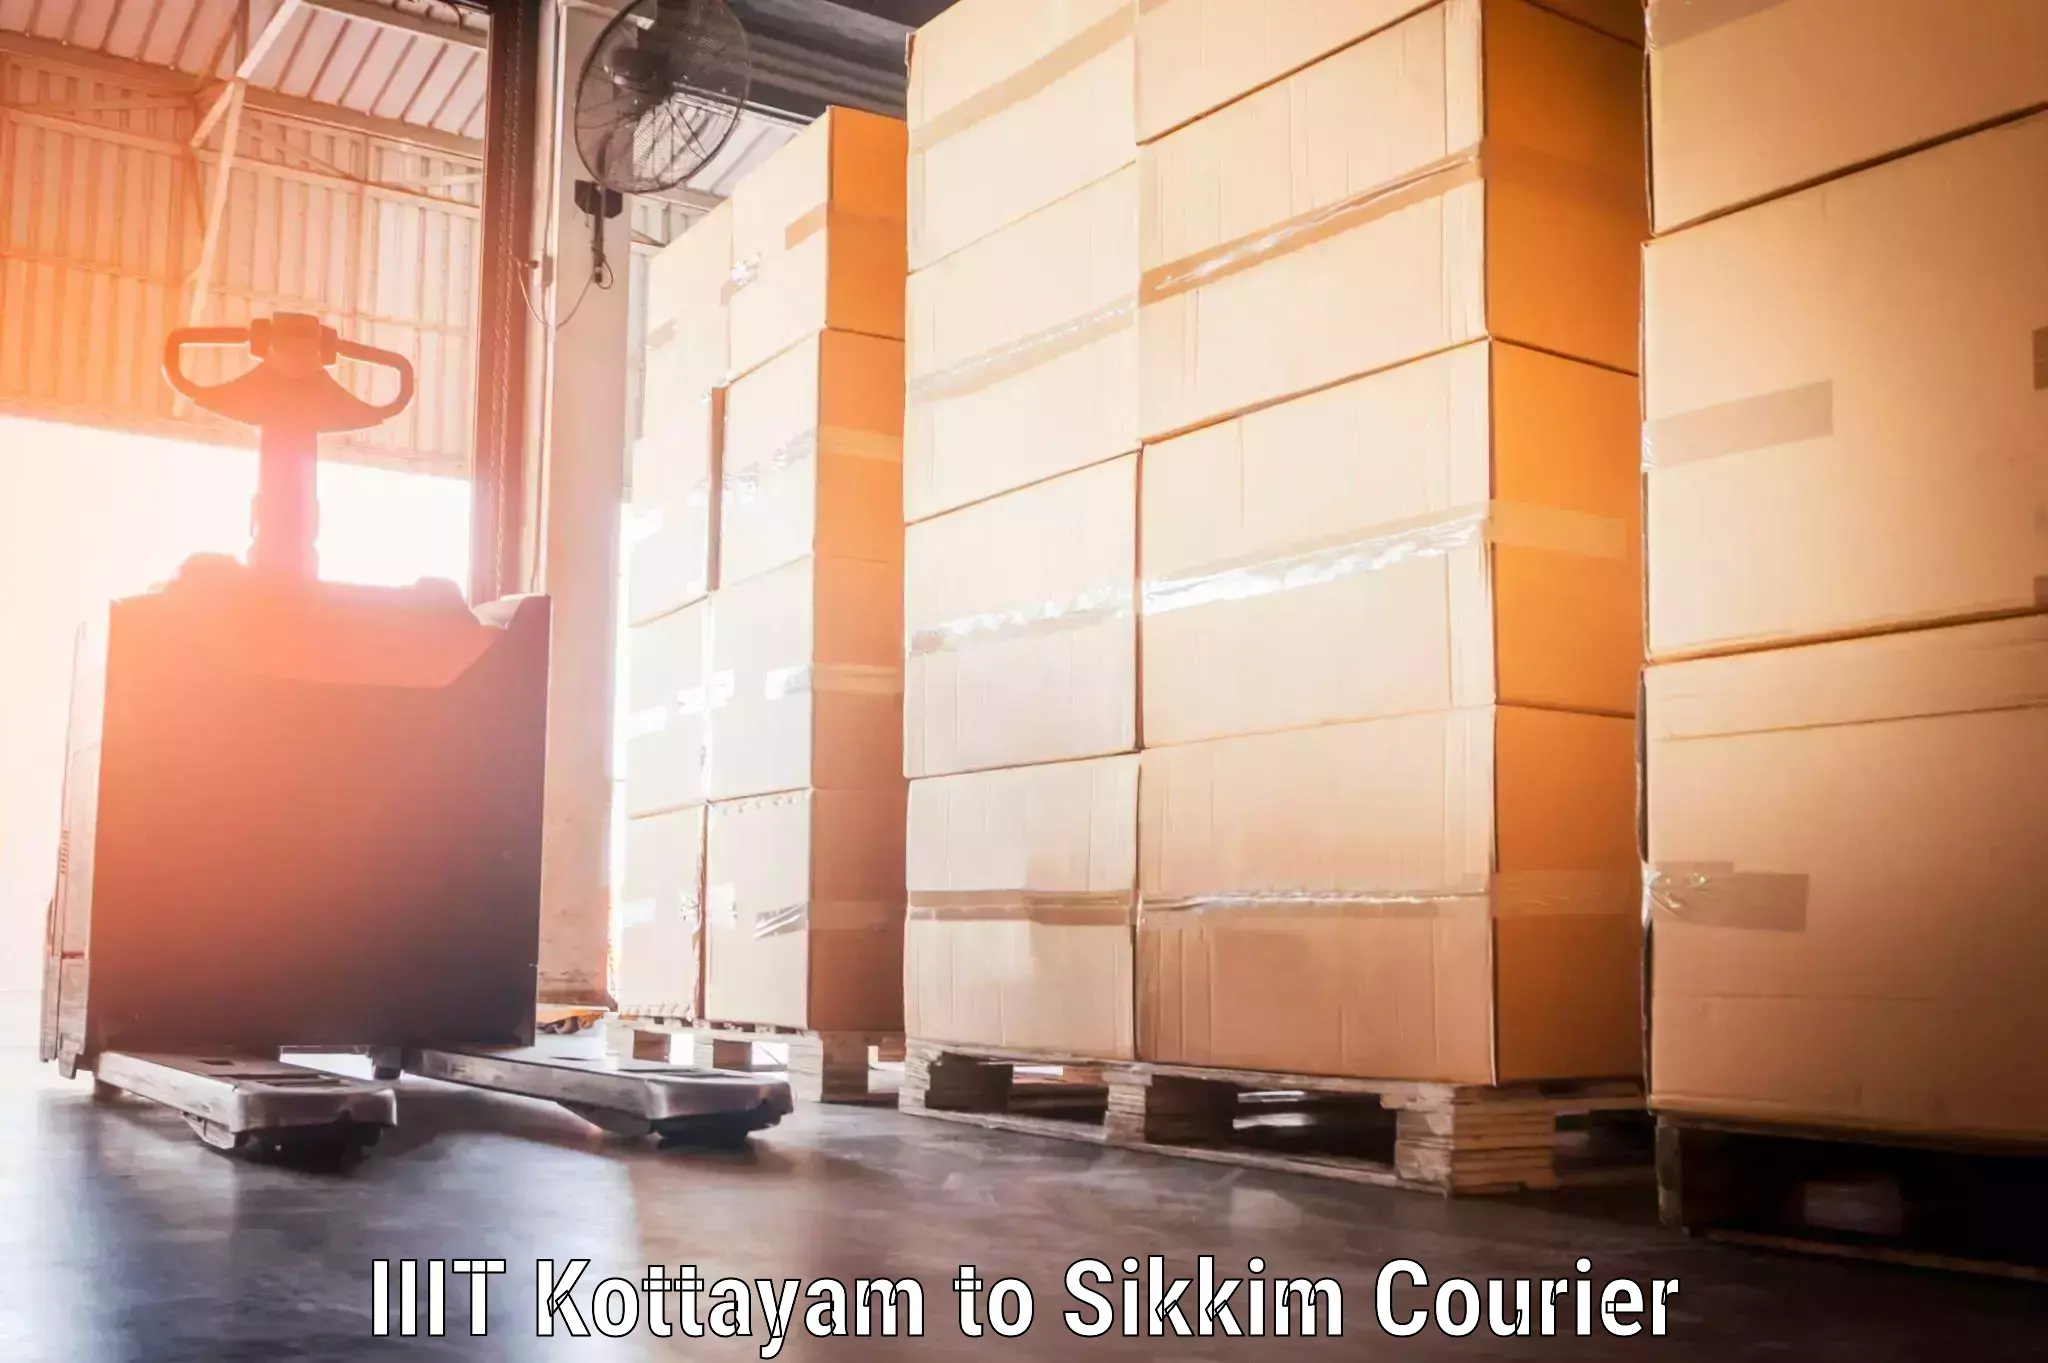 Door-to-door baggage service IIIT Kottayam to Sikkim